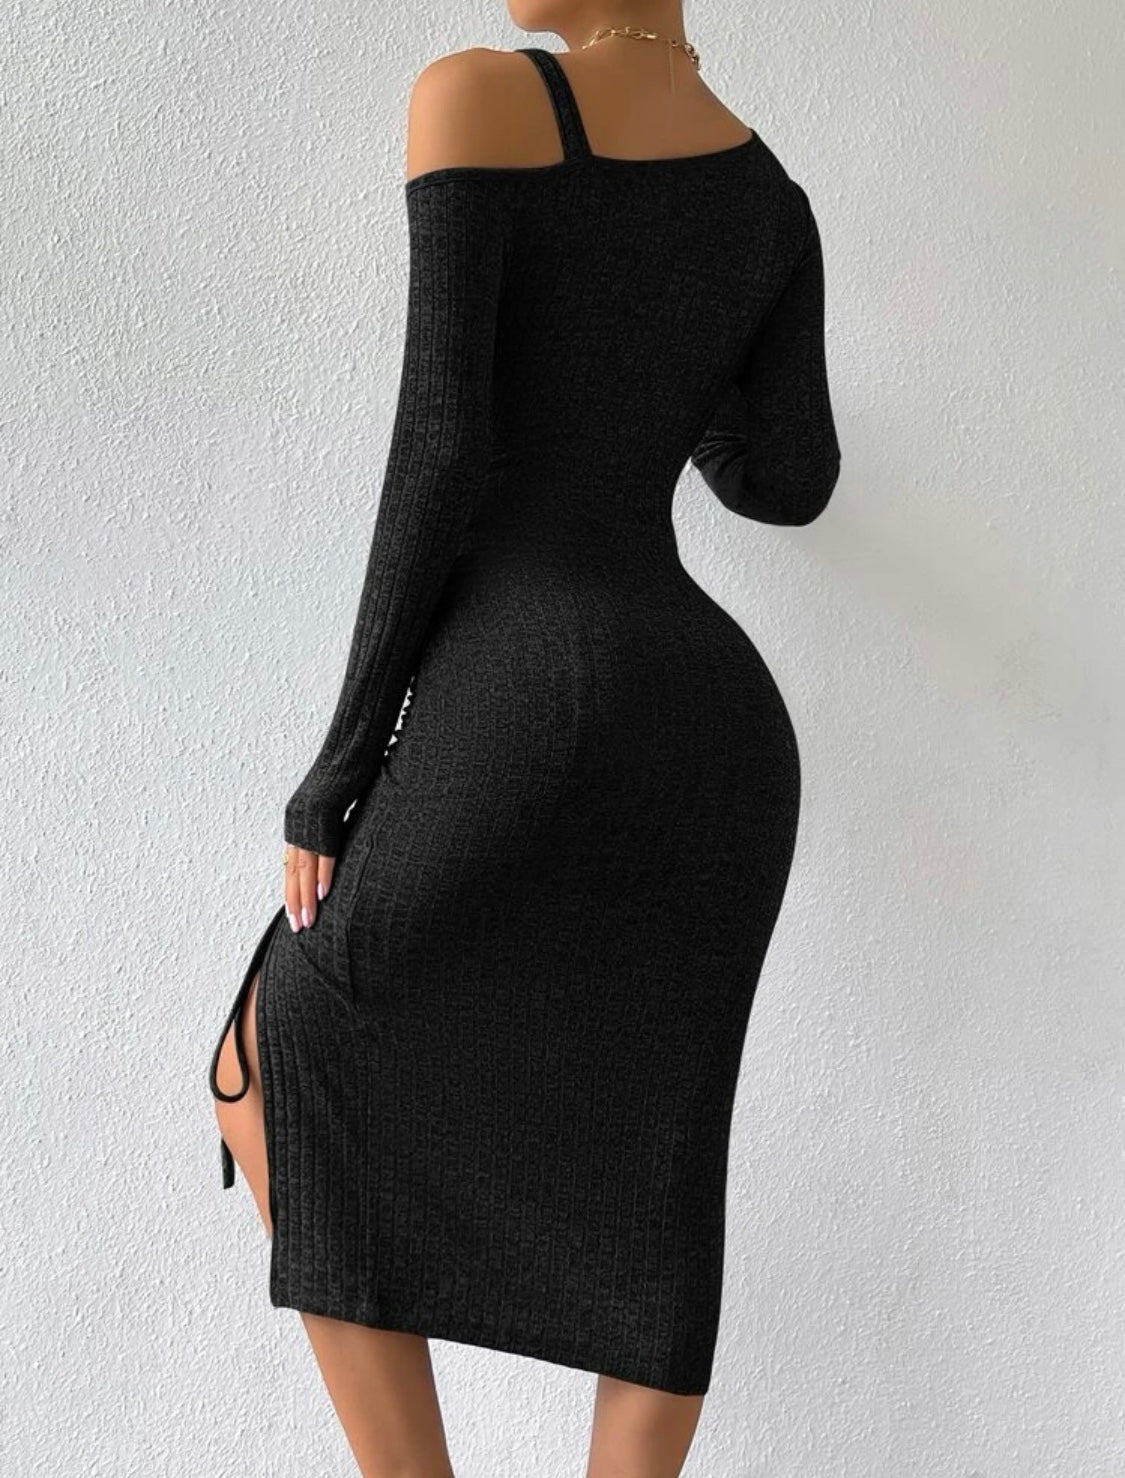 Vestido preto